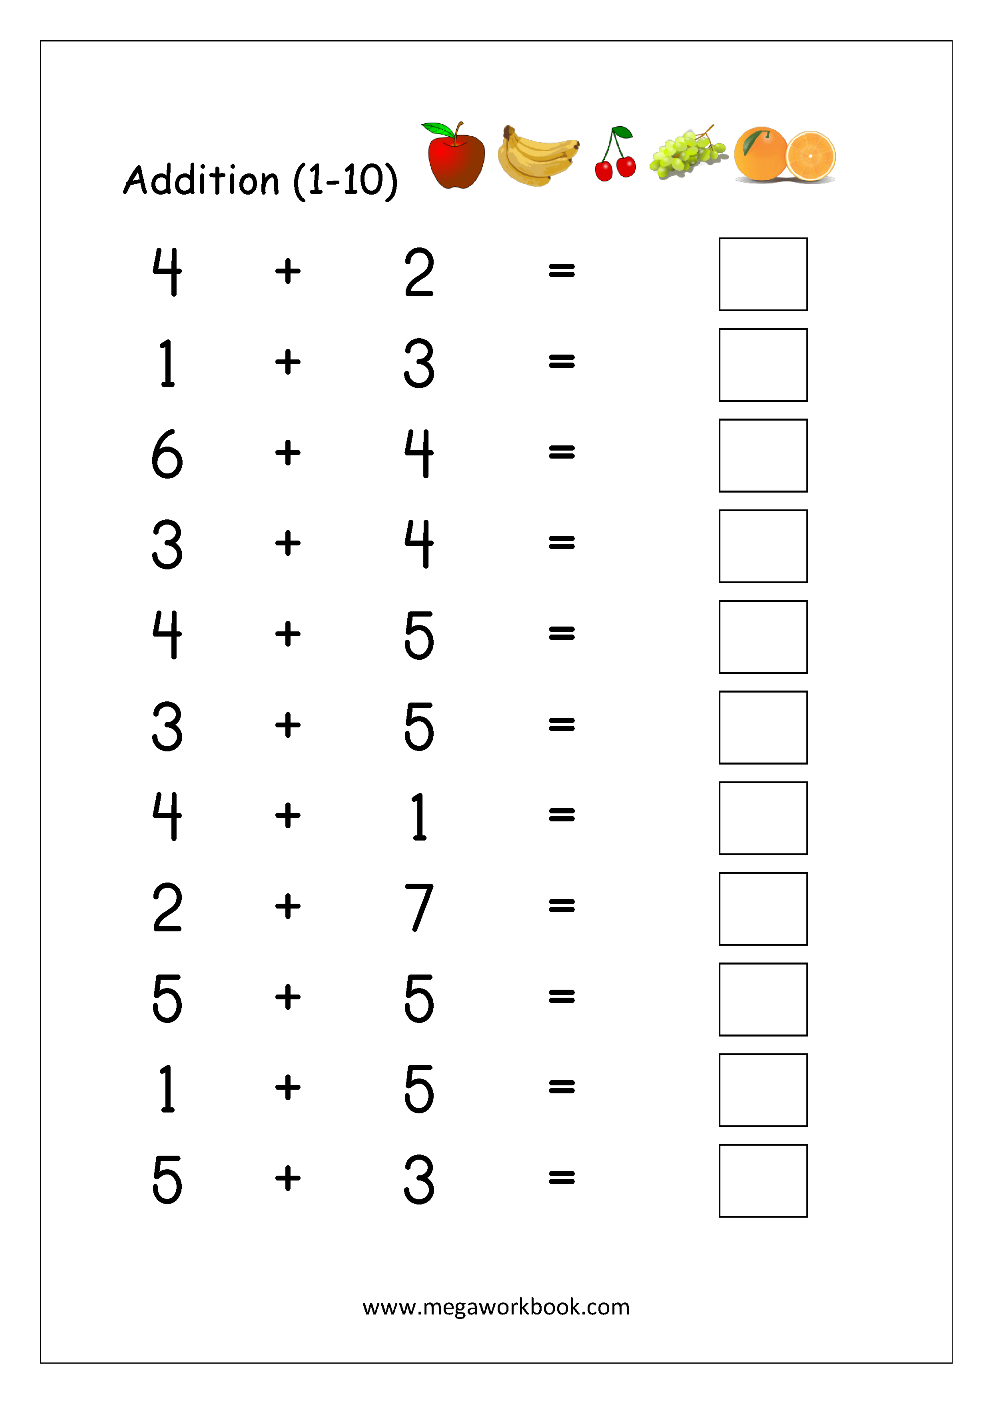 free-printable-number-addition-worksheets-1-10-for-kindergarten-and